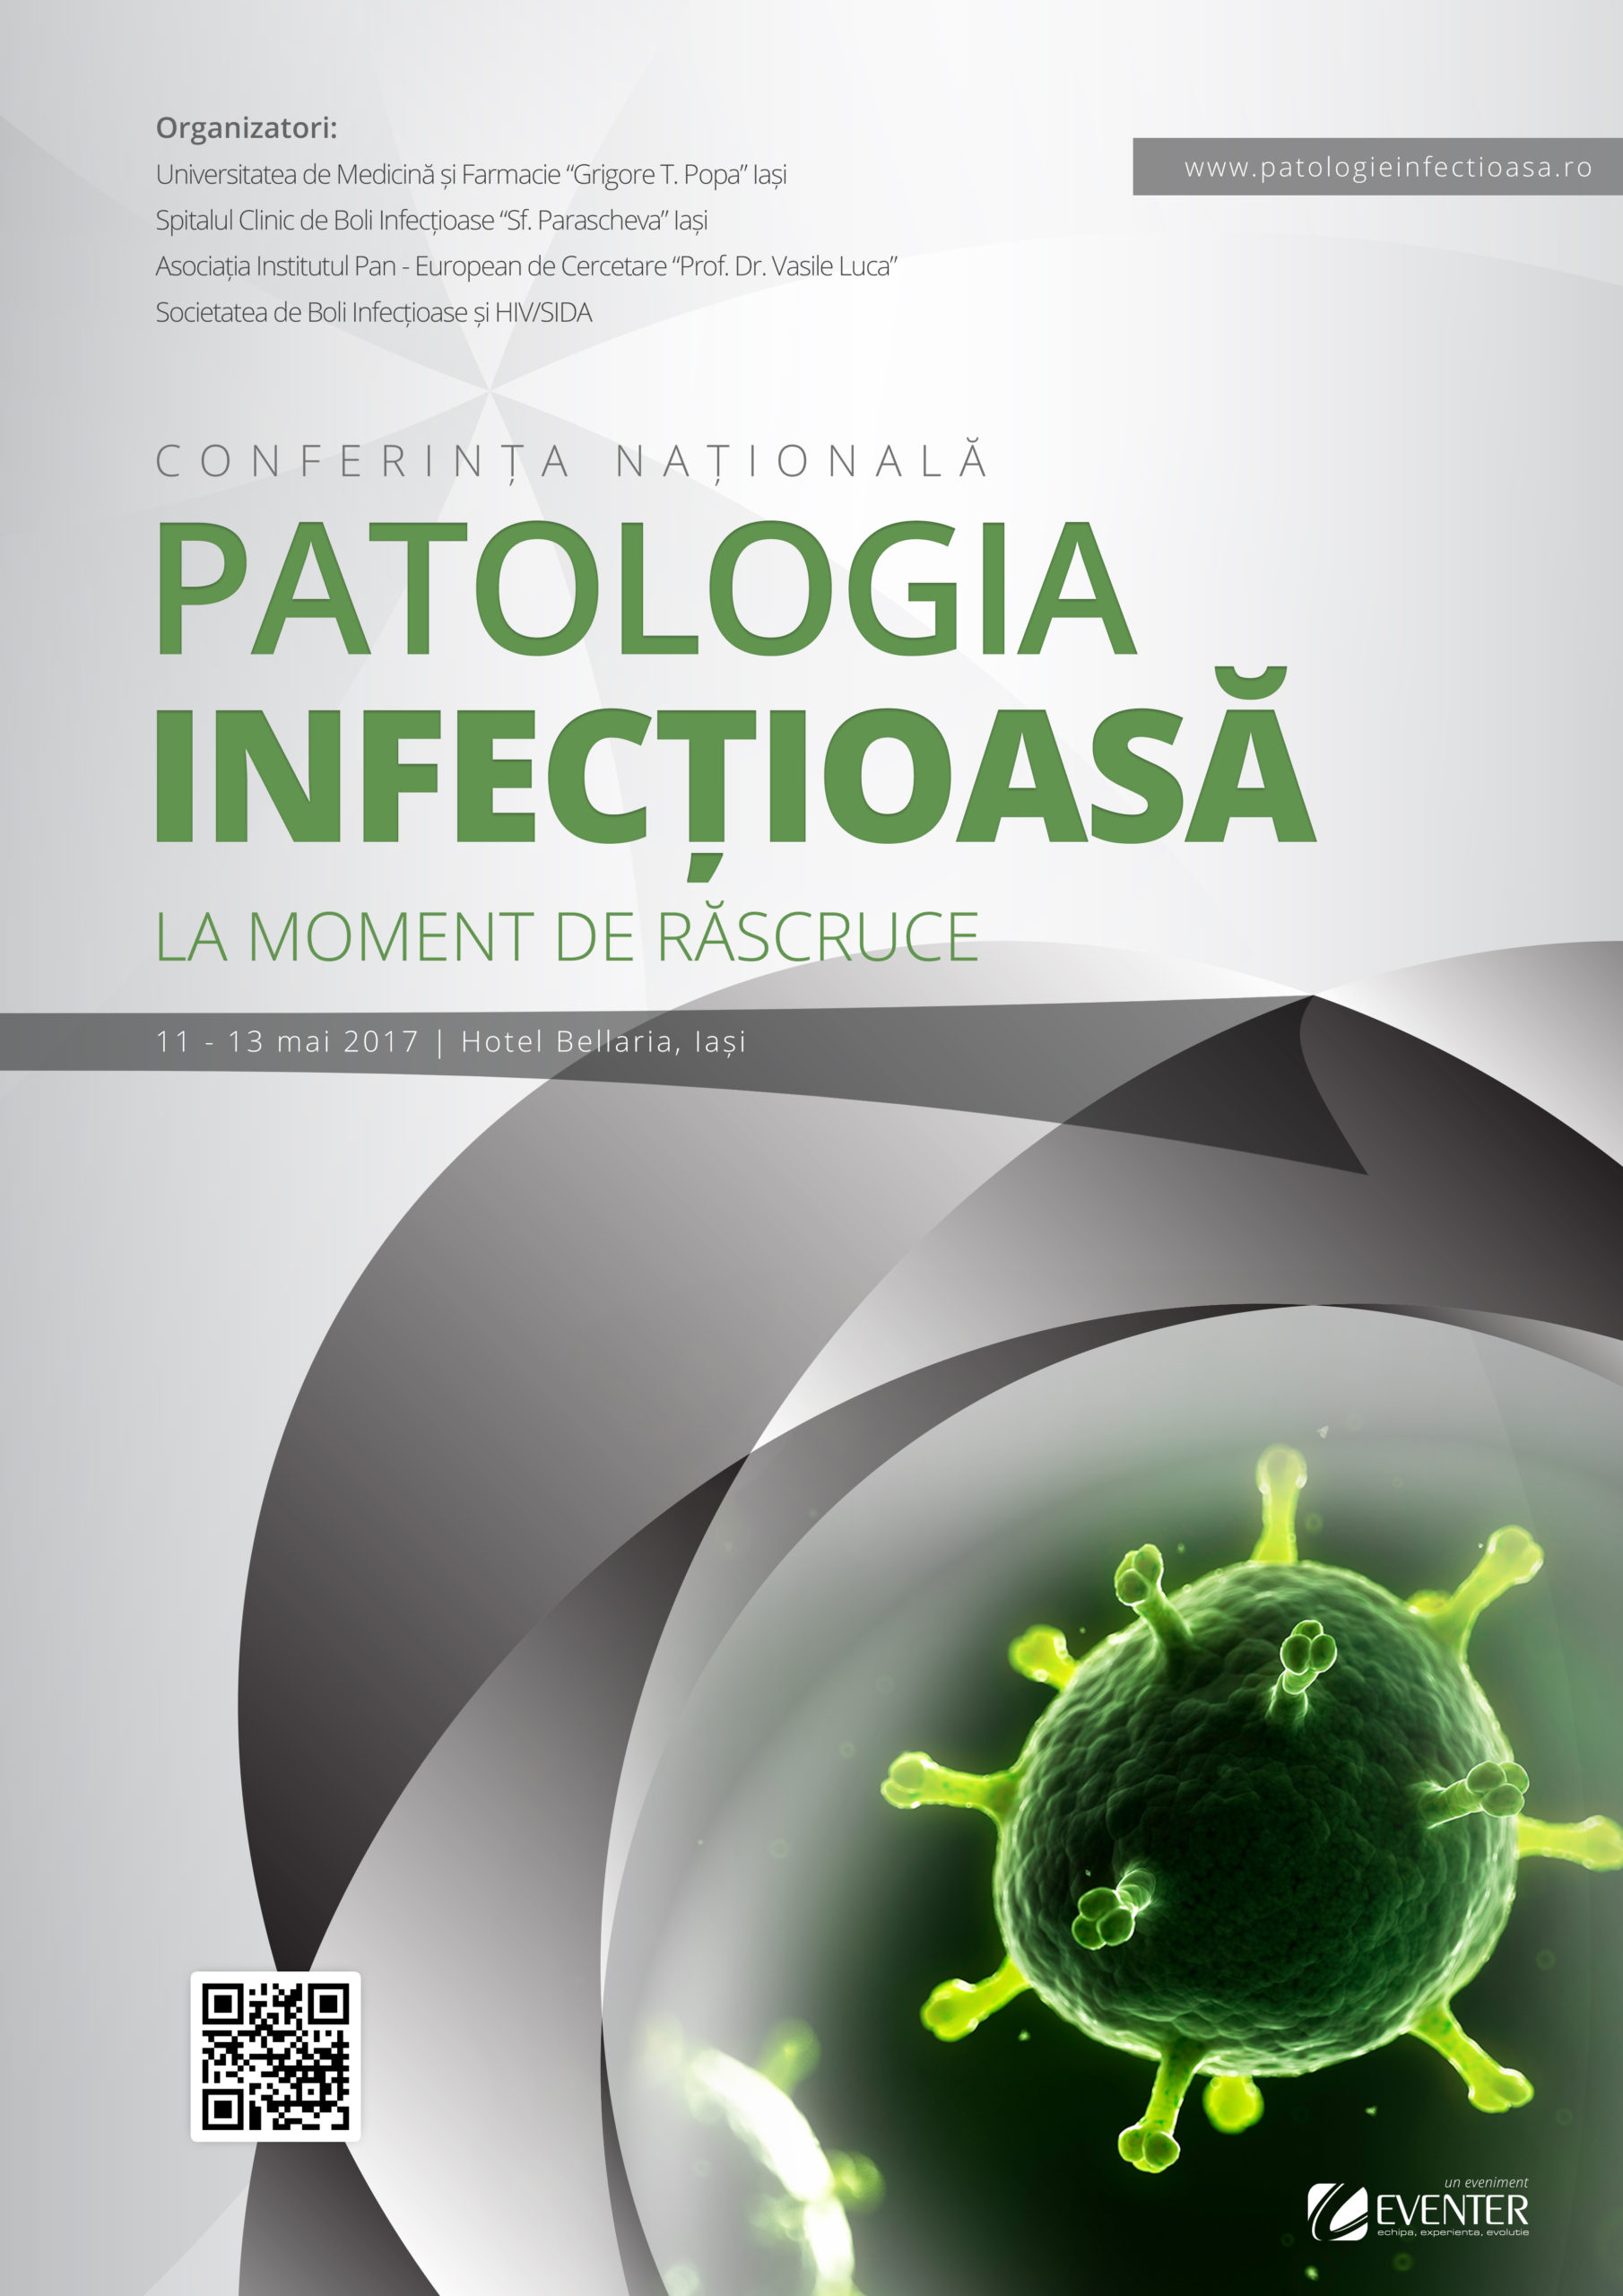 PATINF 2017 – Conferința Națională de Patologie Infecțioasă